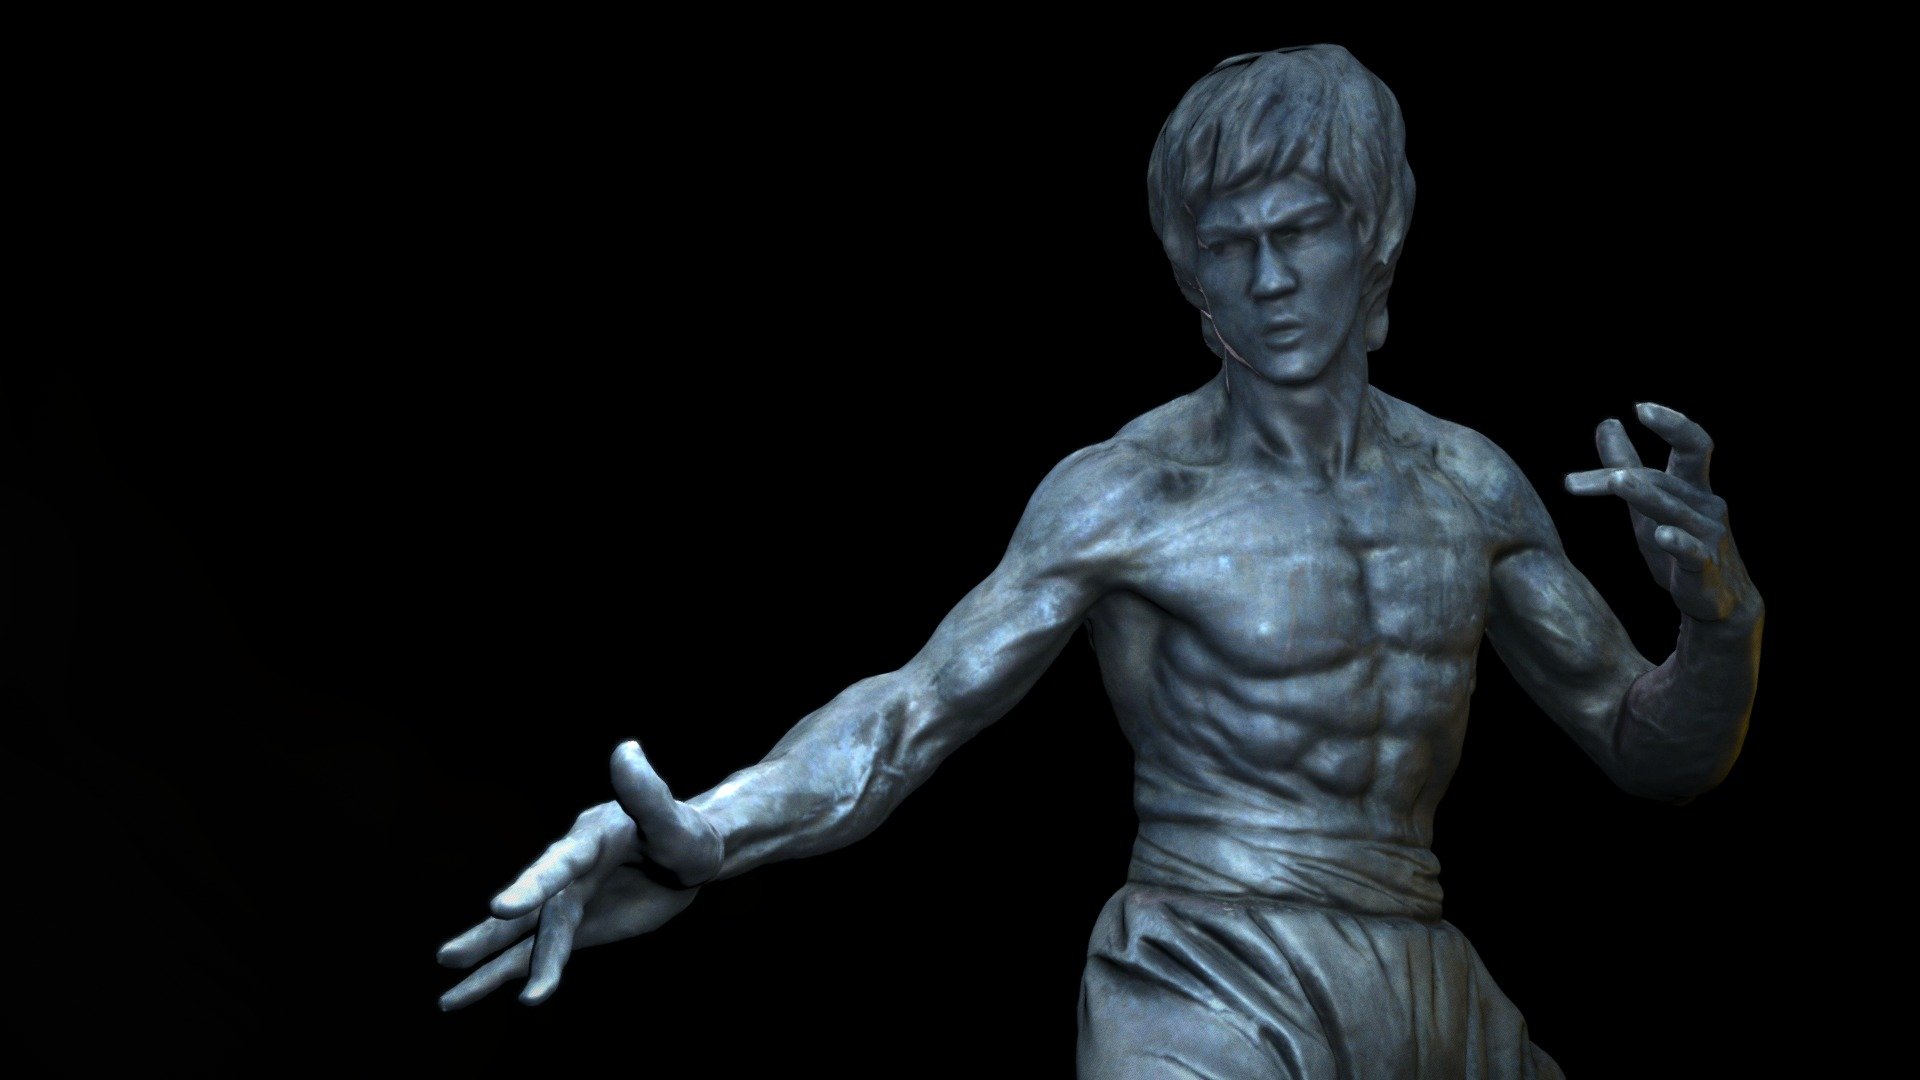 “Be water, my friend” – Bruce Lee - Bruce Lee statue, Tsim Sha Tsui, Hong Kong - 3D model by Andrej Boleslavský (@AndrejBoleslavsky) 3d model